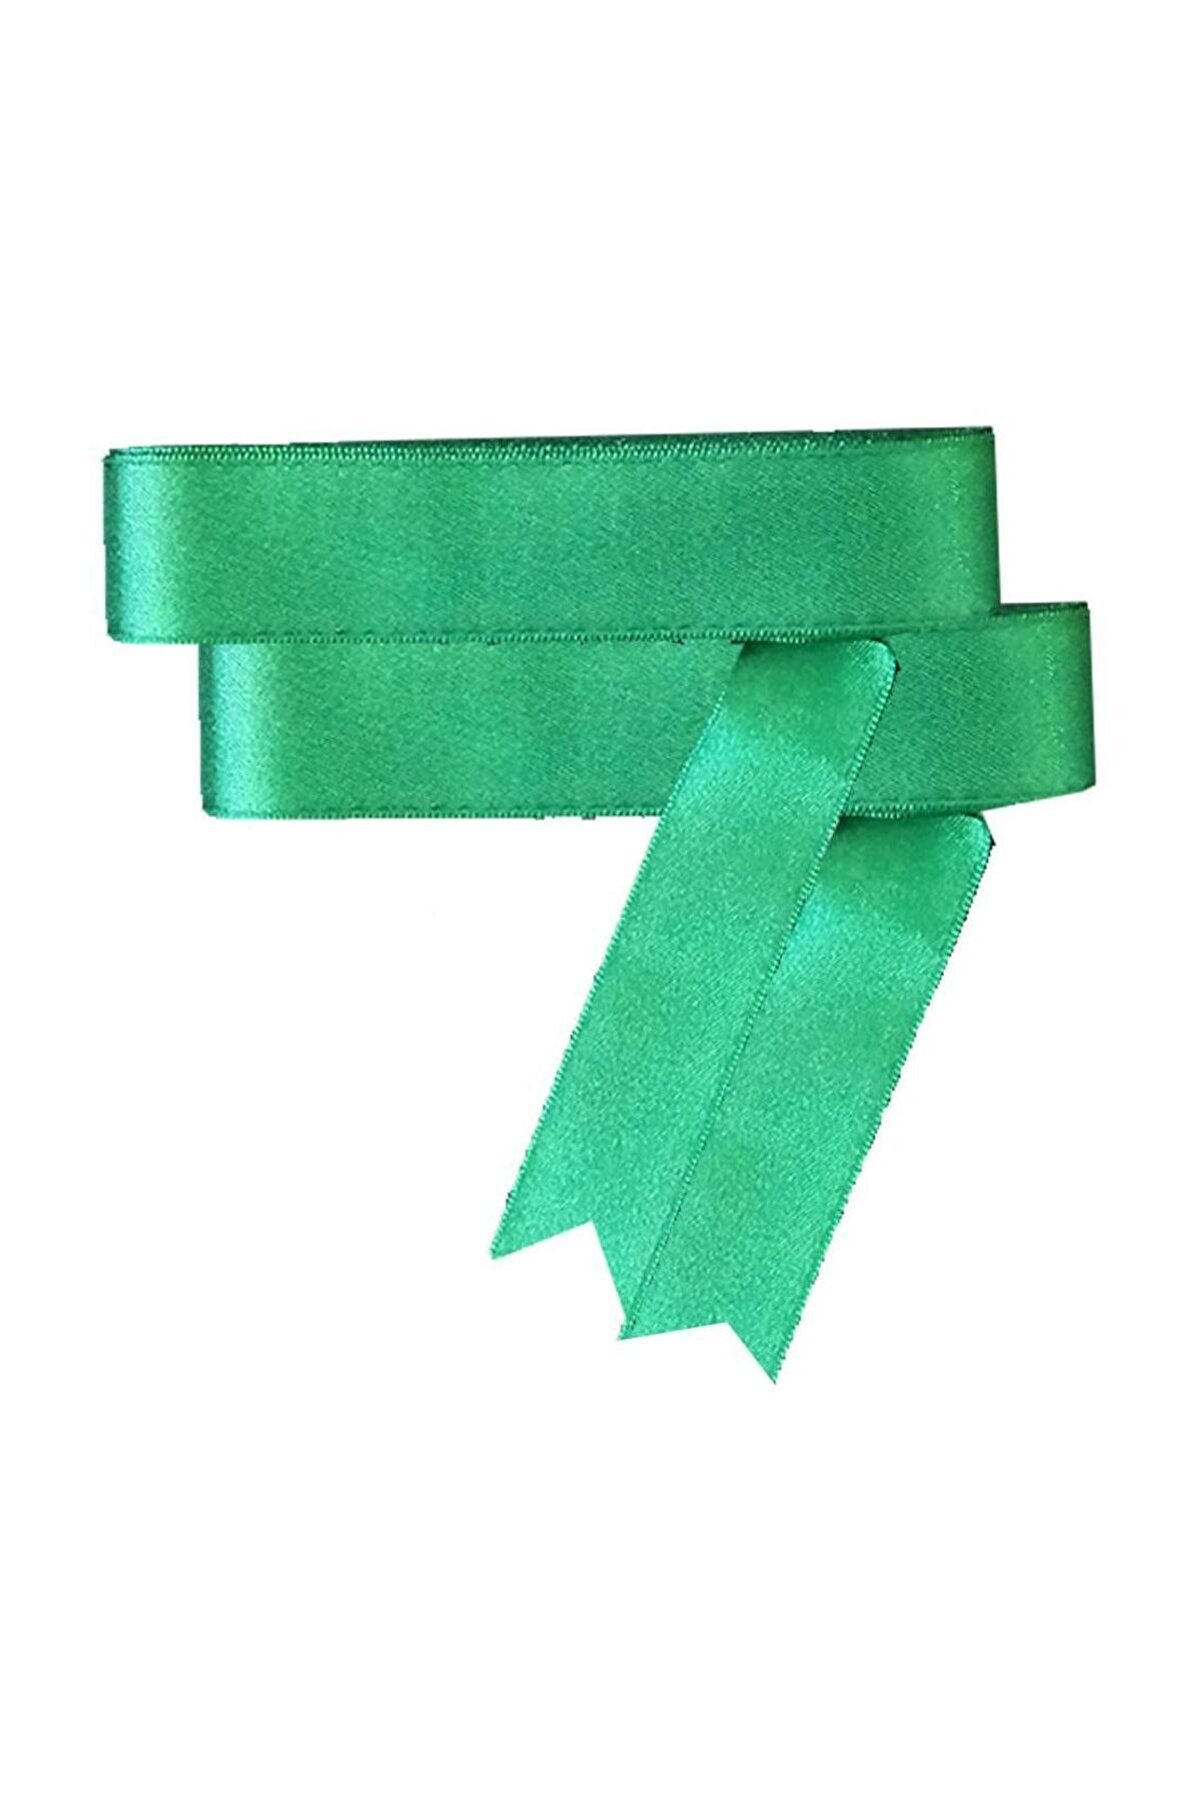 Parti Dolabı Koyu Yeşil Saten Kurdele 10mt, 30mm (3cm) Kalınlığında